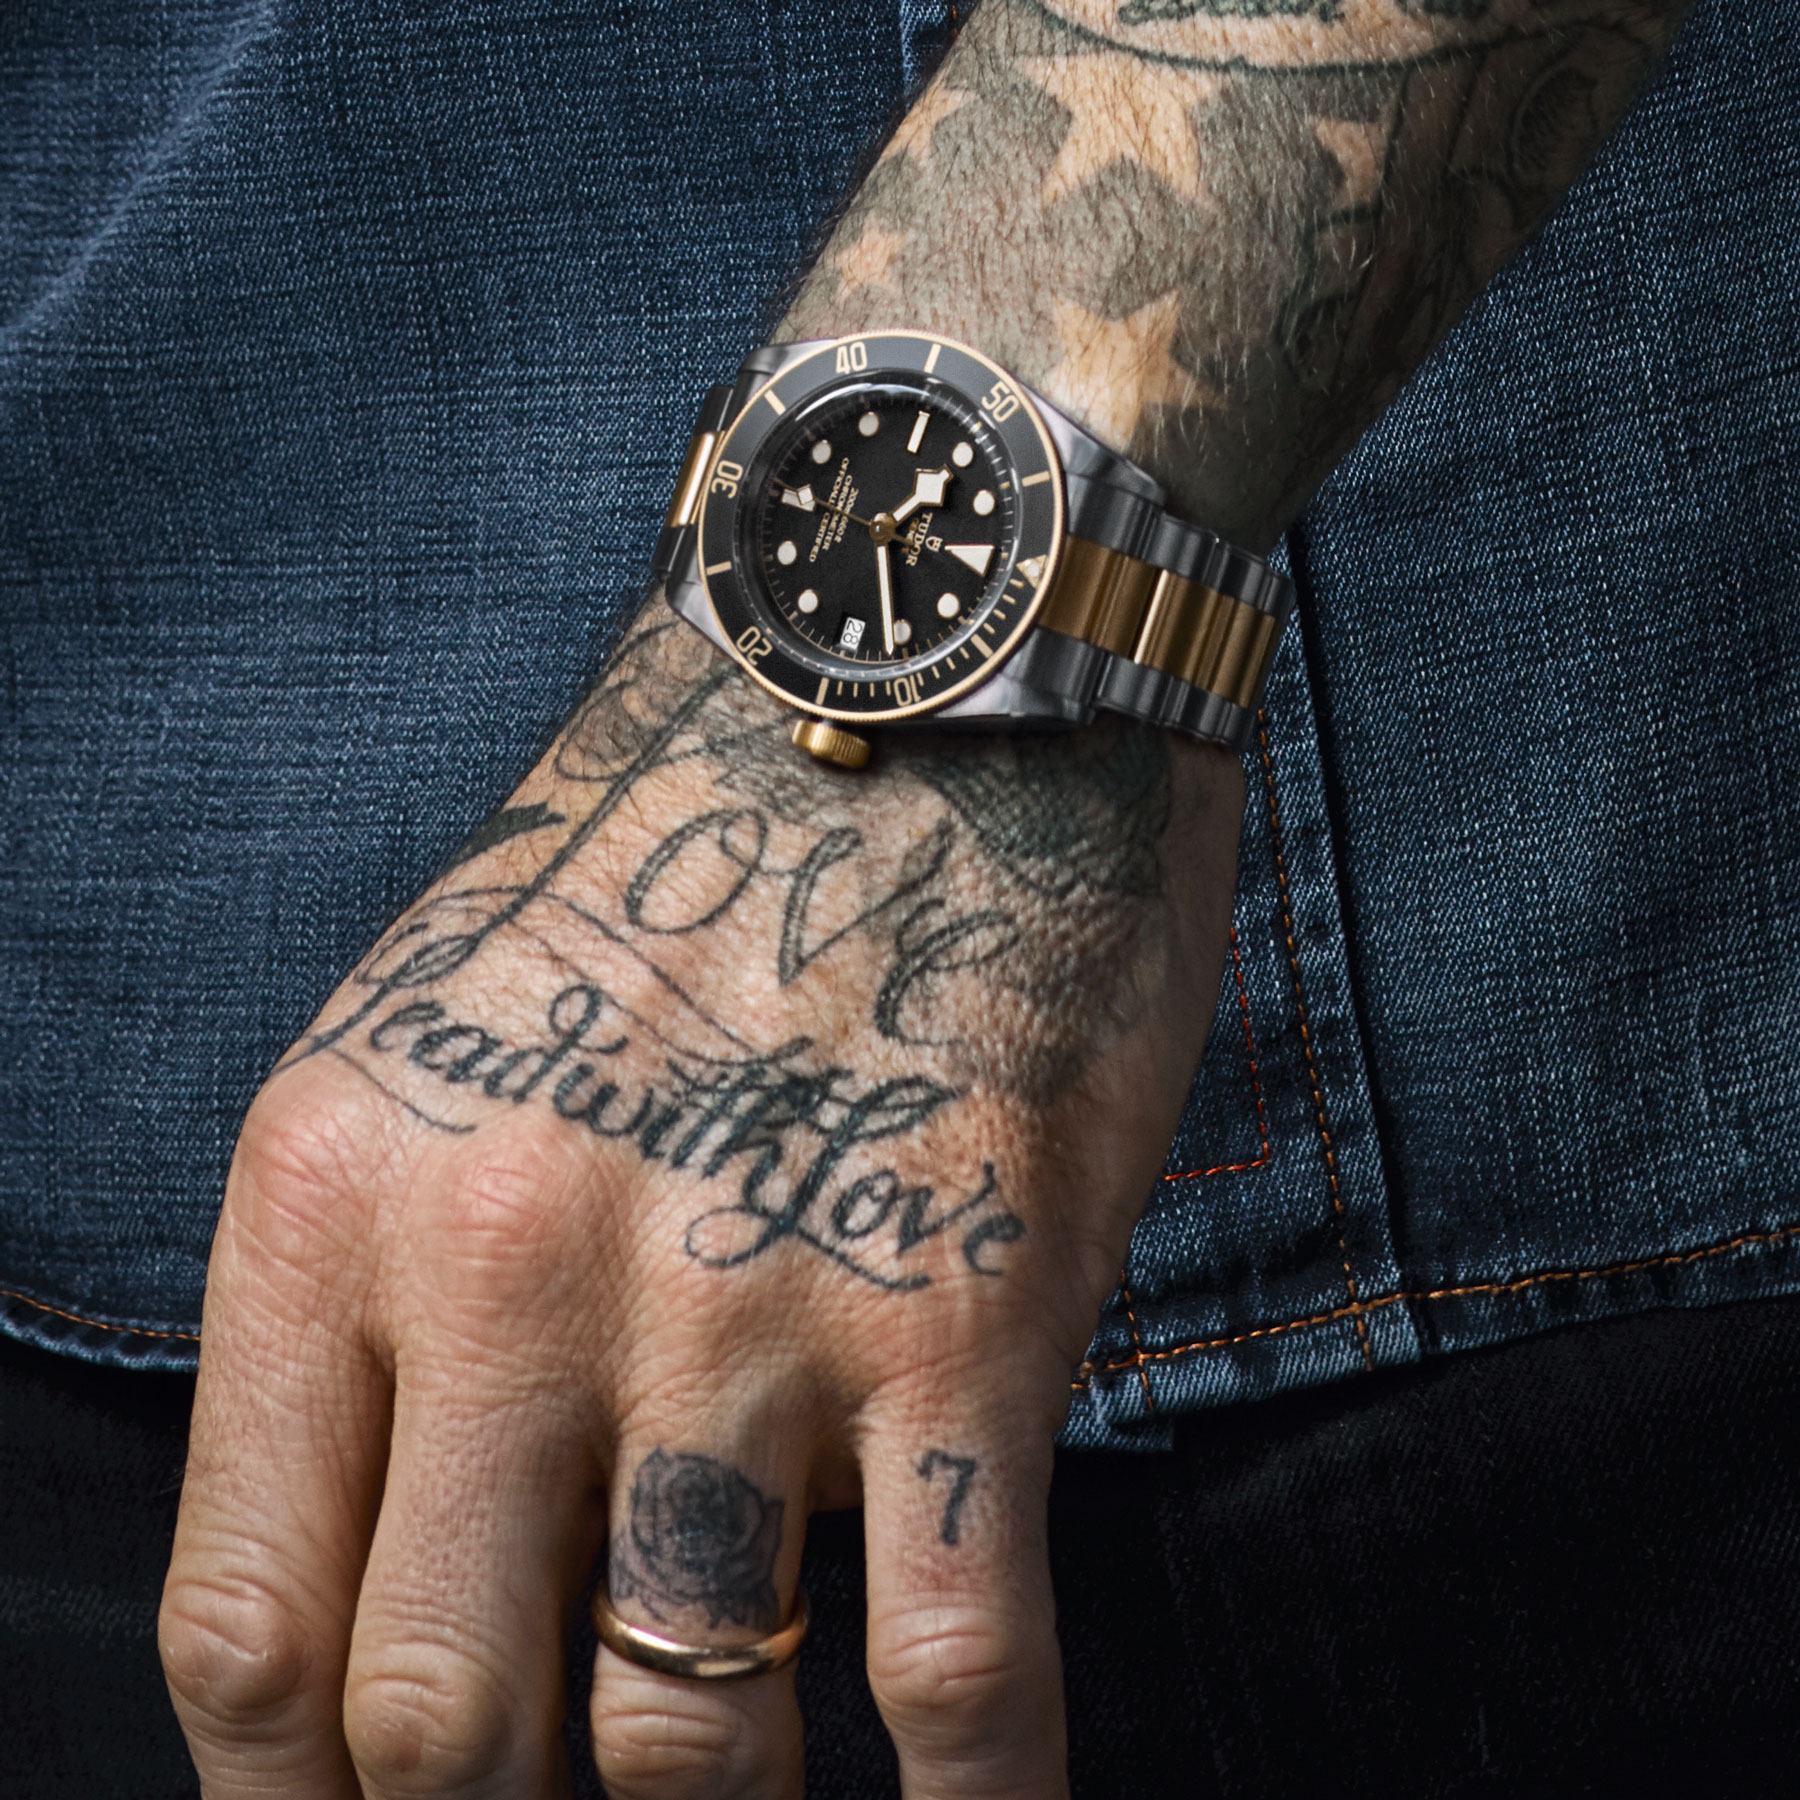 Odell Beckham Jr | Odell beckham jr tattoos, Beckham jr, Leg tattoo men